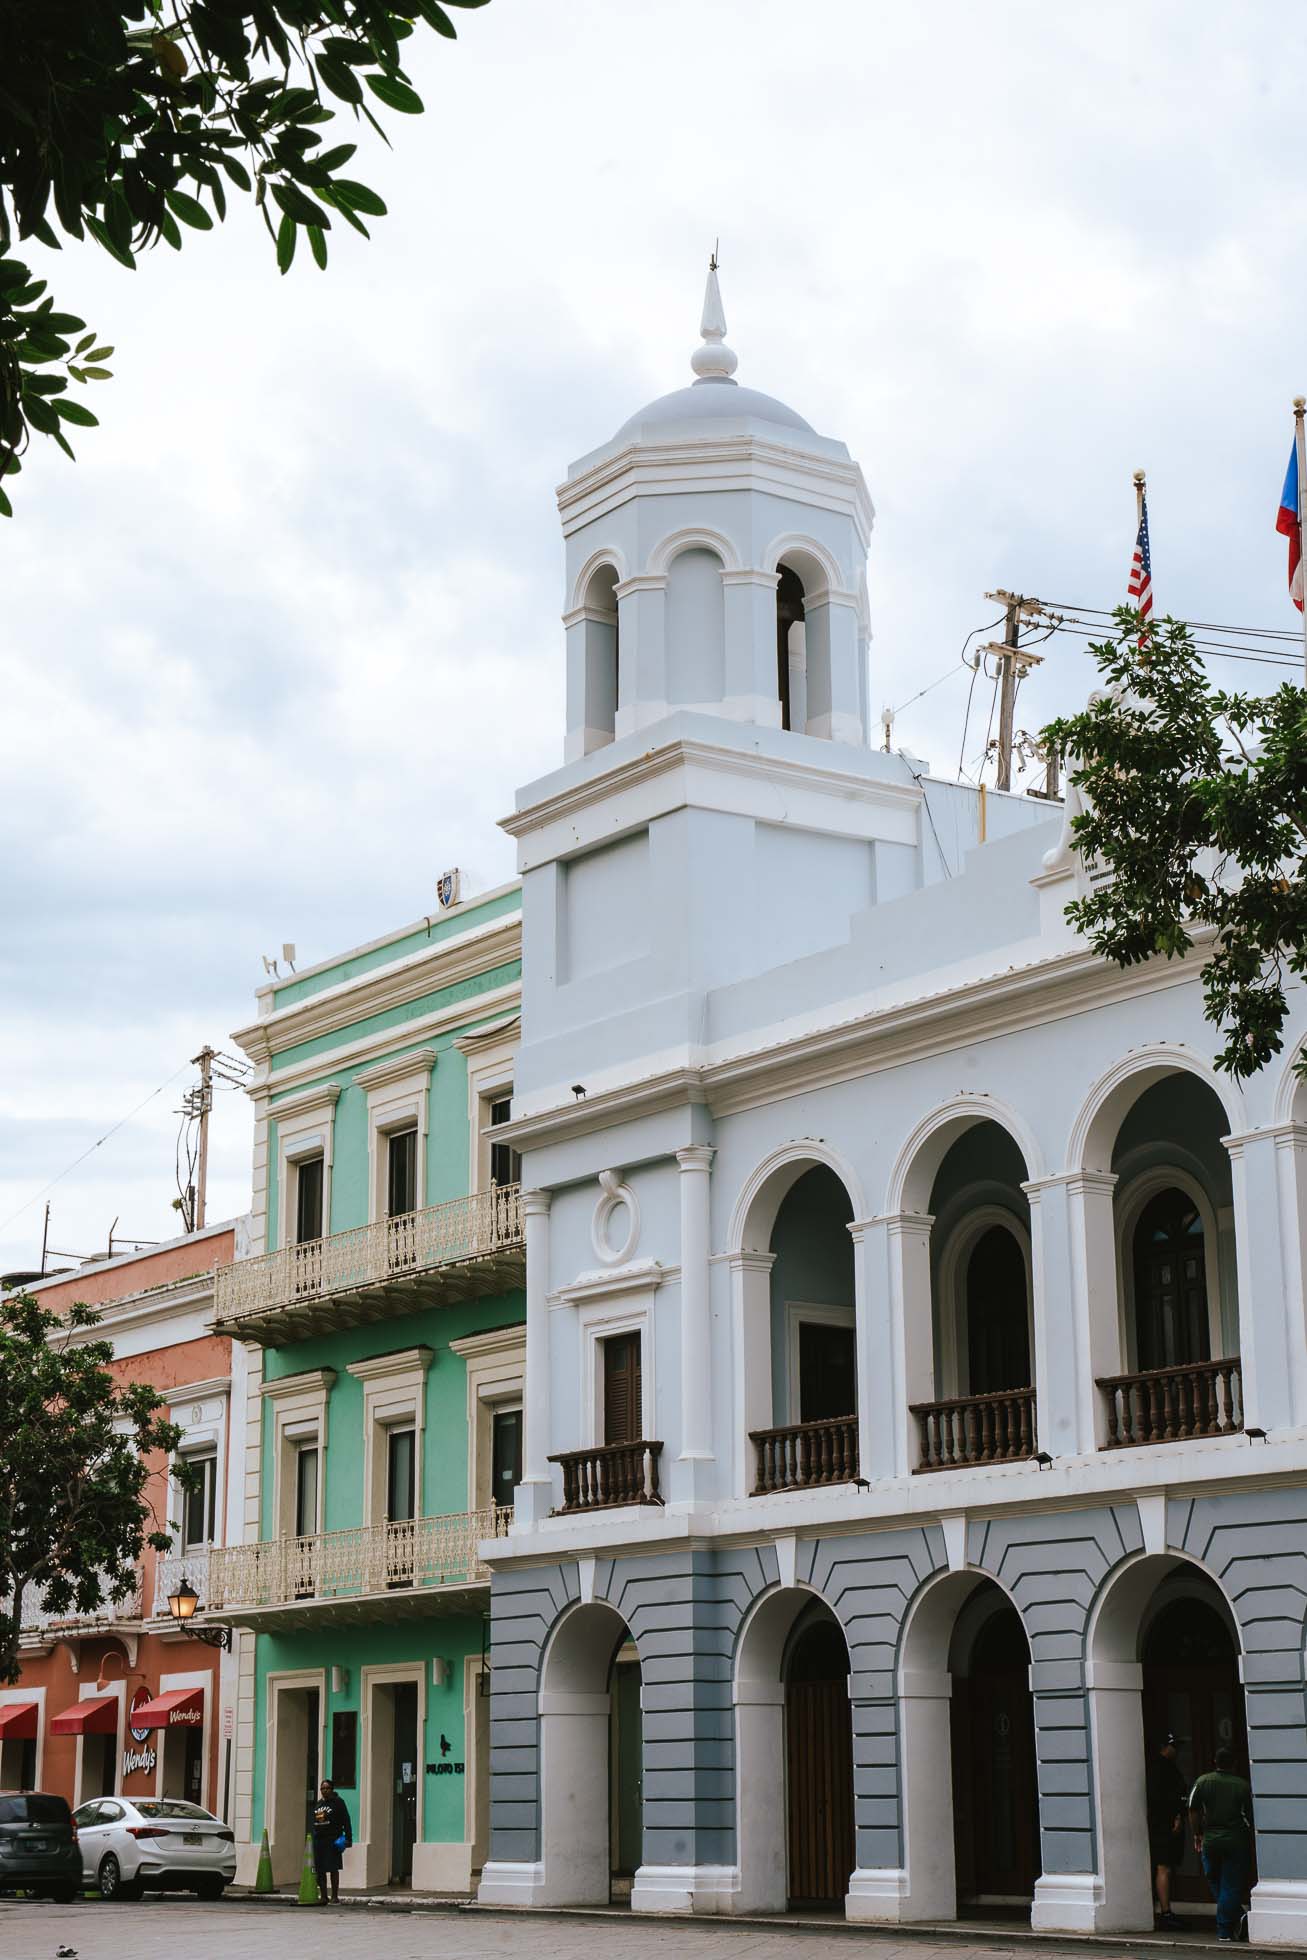 Plaza de Armas de San Juan, una plaza interesante que ver en San Juan, Puerto Rico